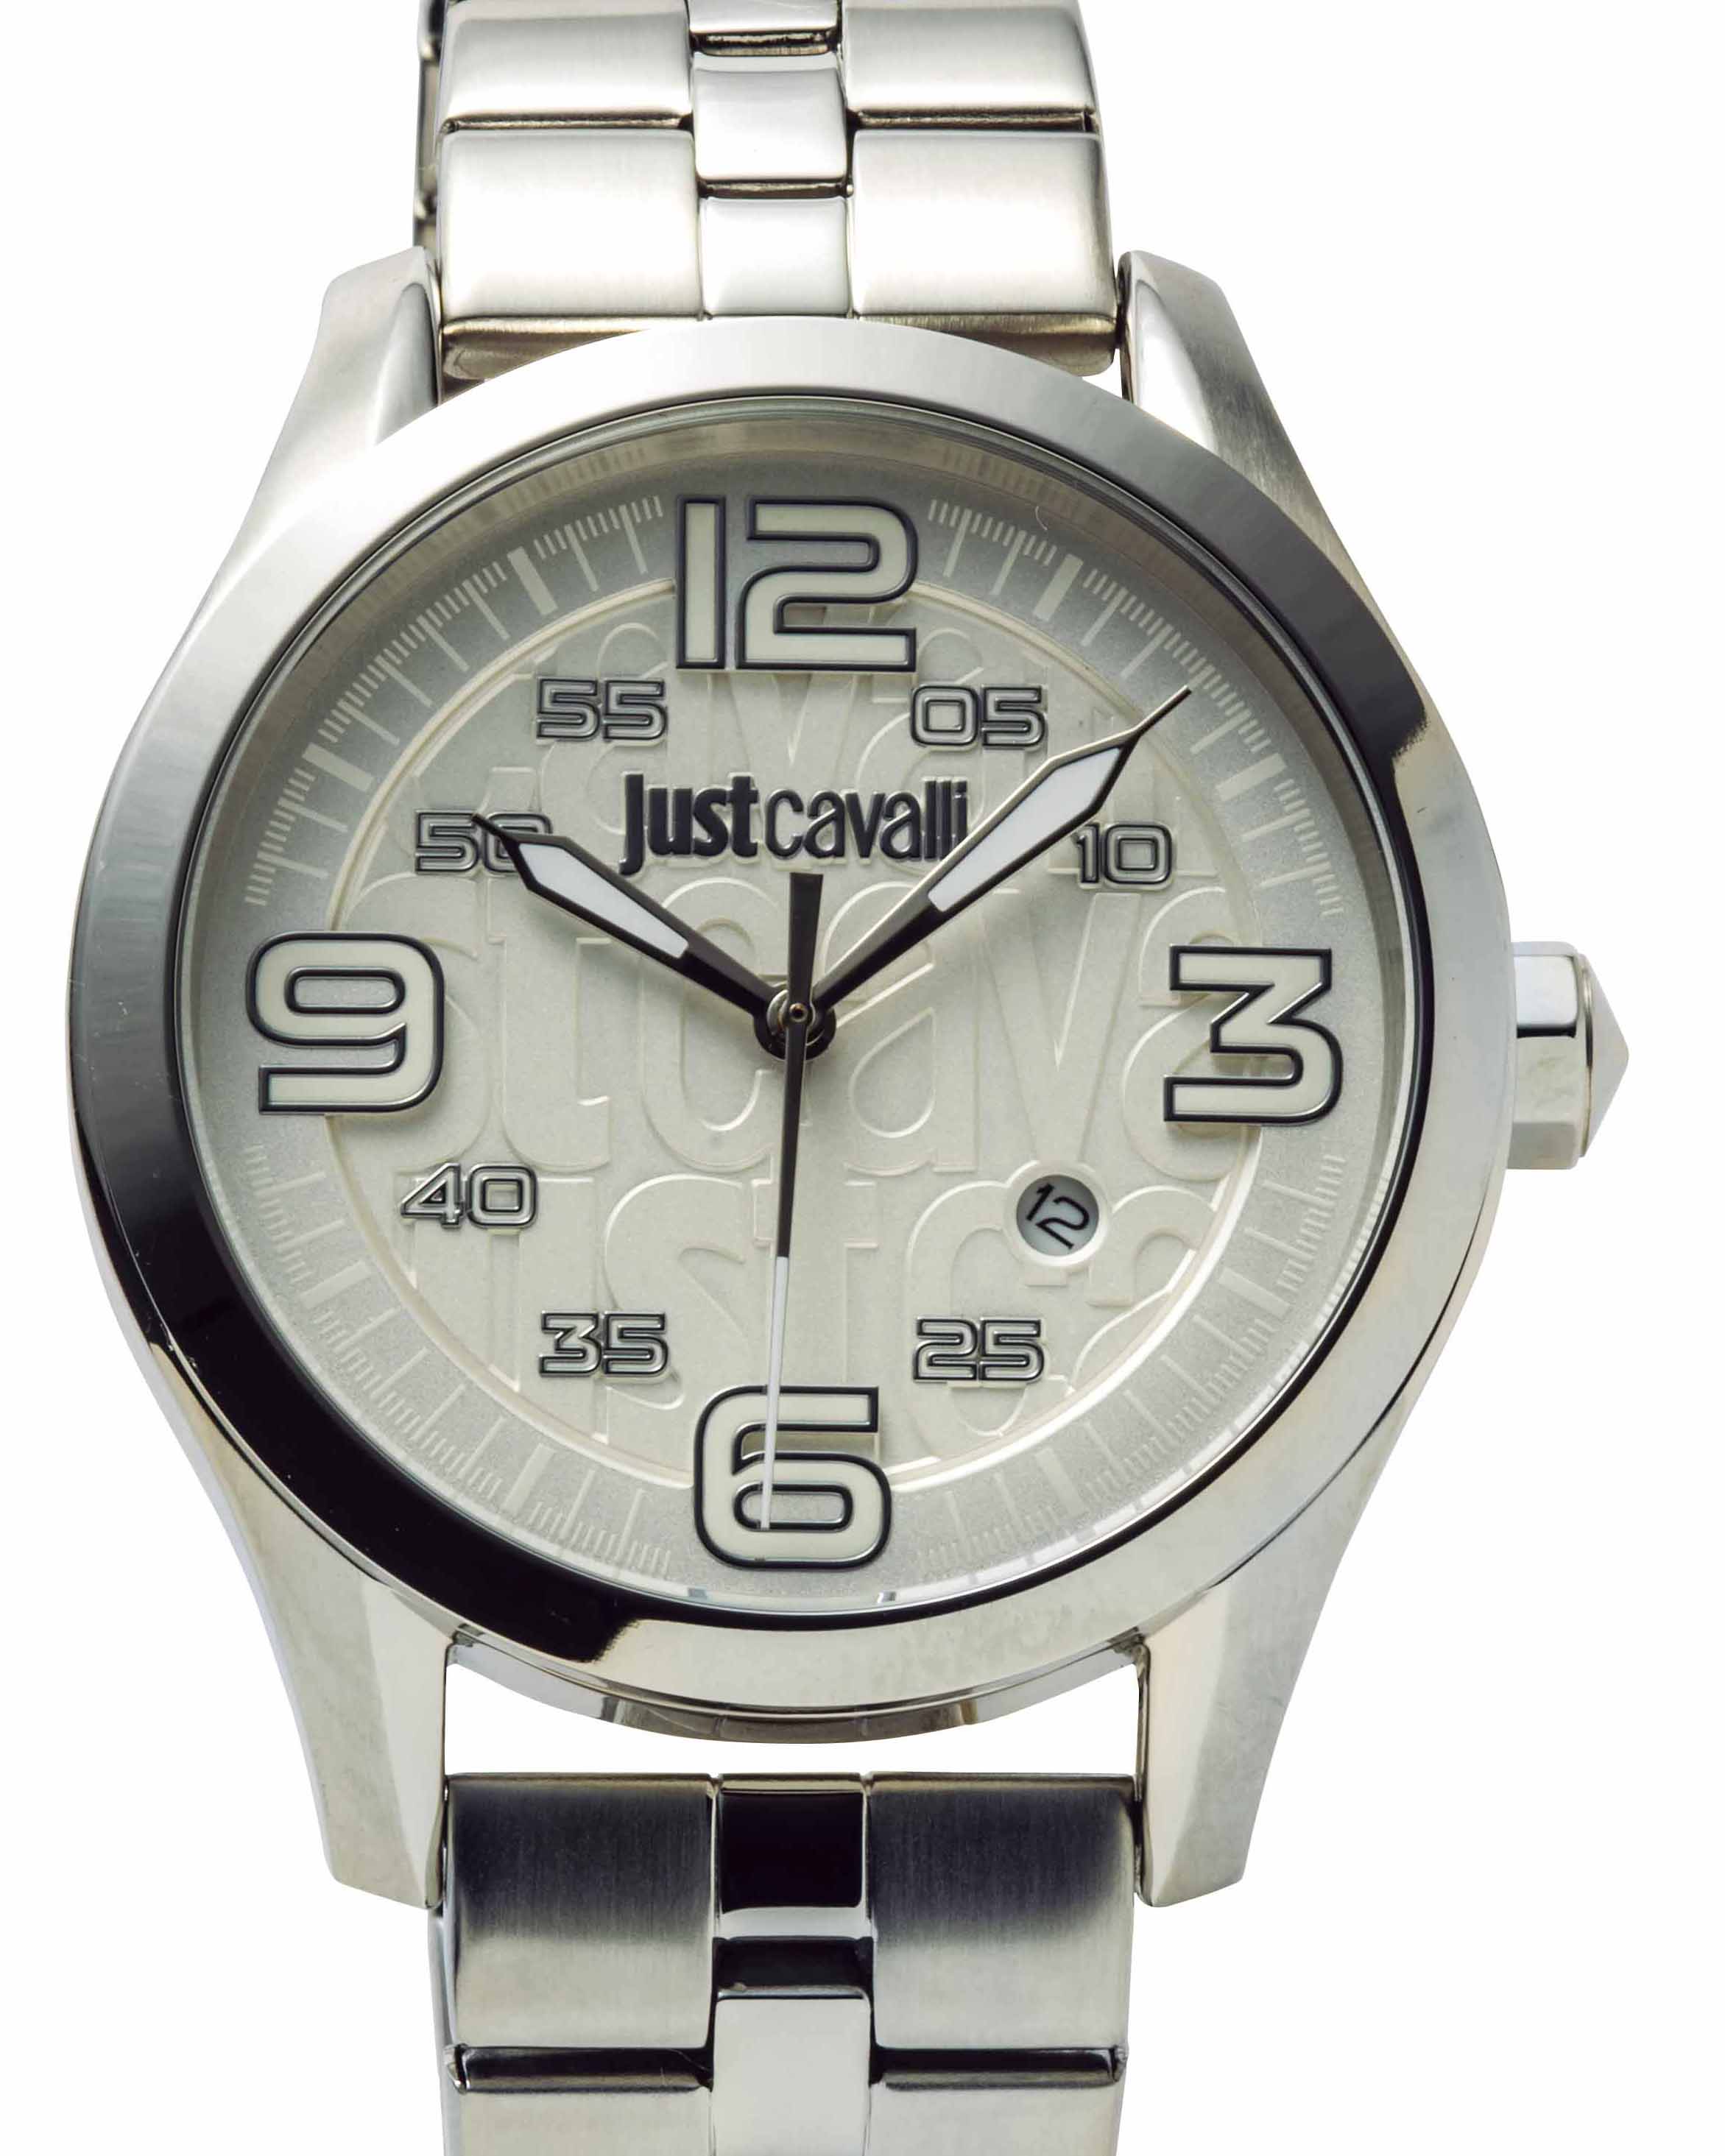 ジャスト カヴァリの腕時計はみんな小粋で魅力的 - HEROES ONLINE